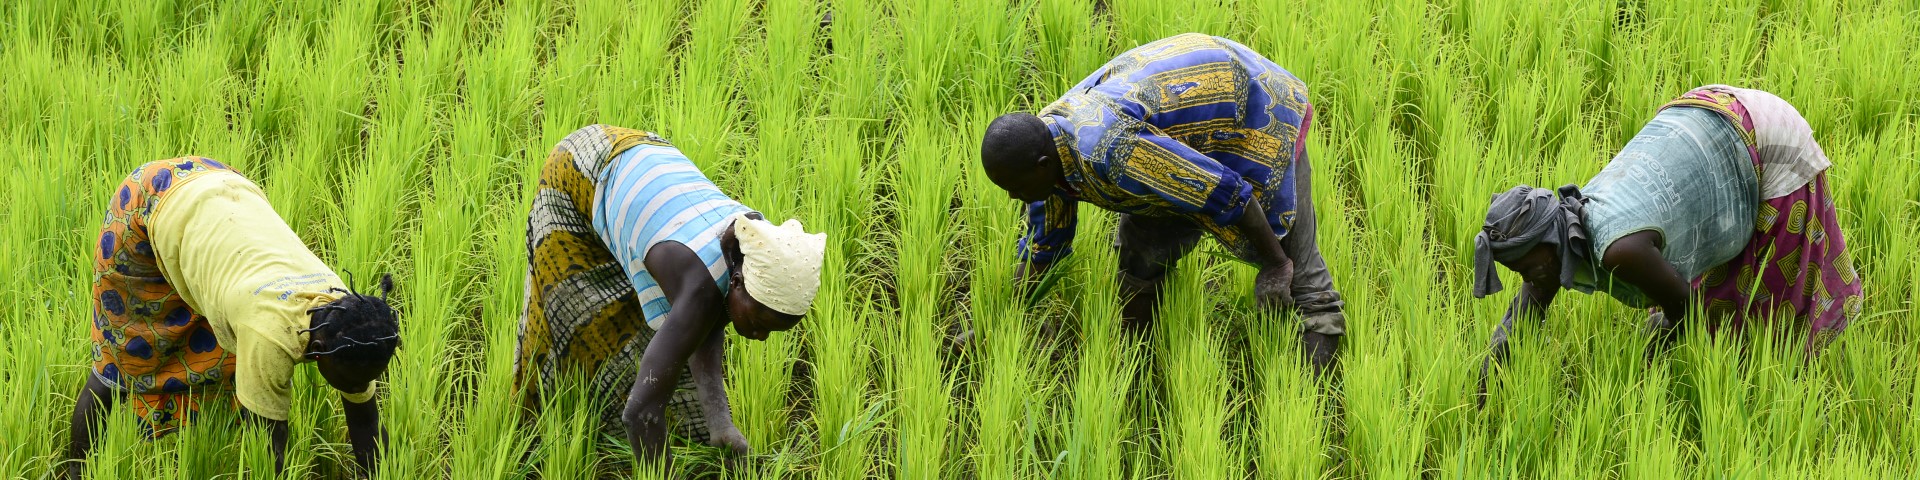 Bäuerinnen und Bauern arbeiten auf einem Reisfeld.